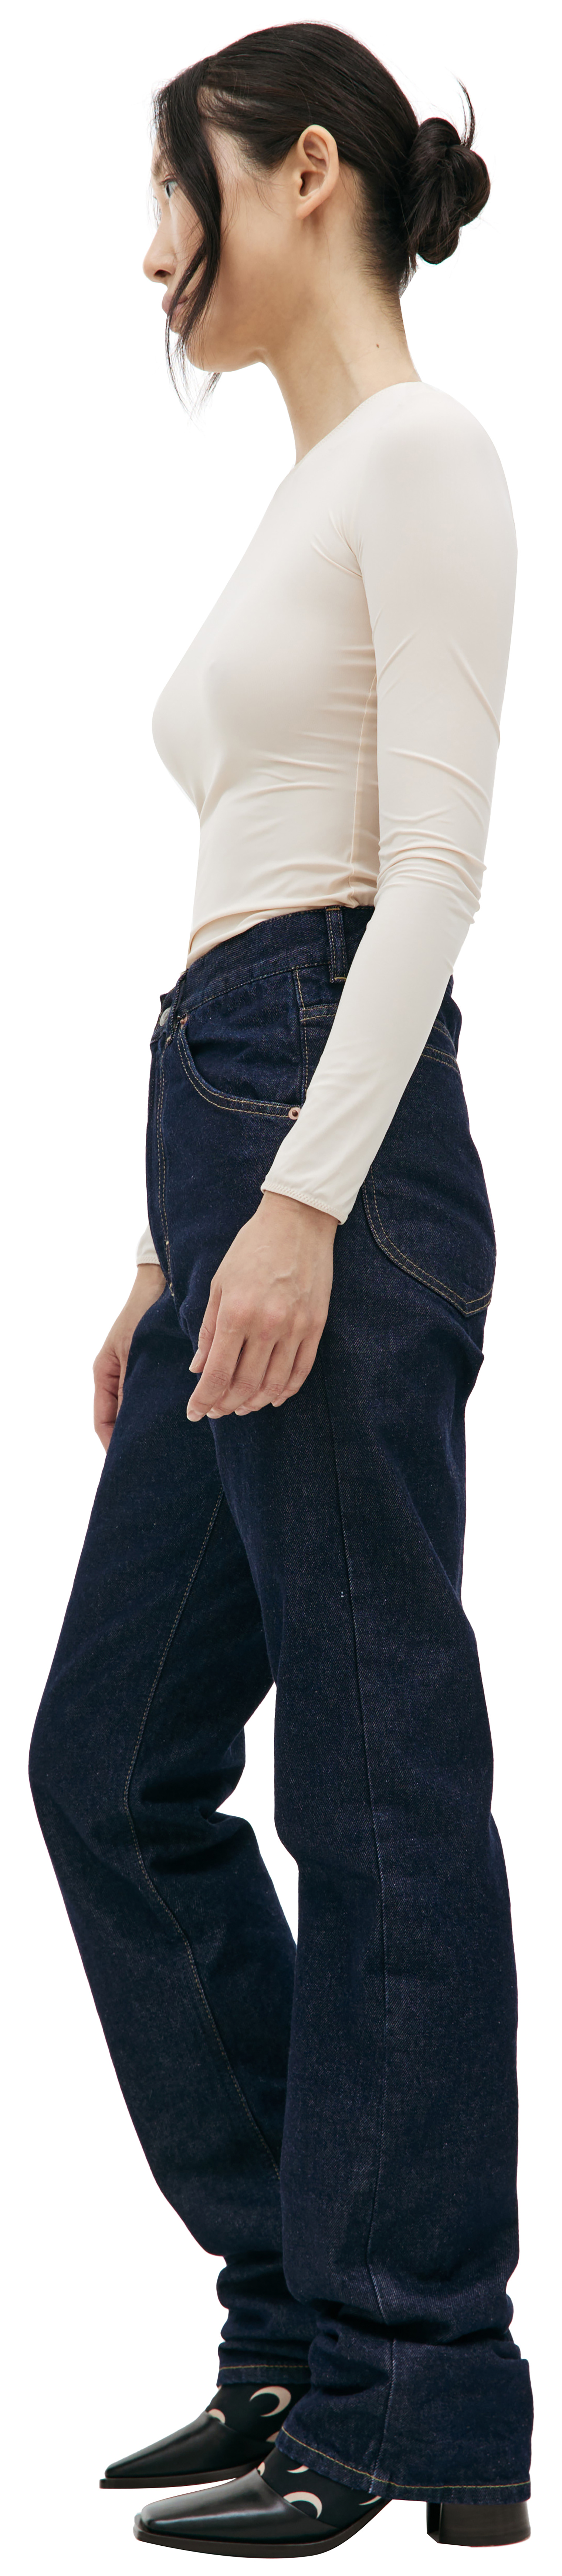 Buy Maison Margiela women navy blue straight leg jeans for $600 